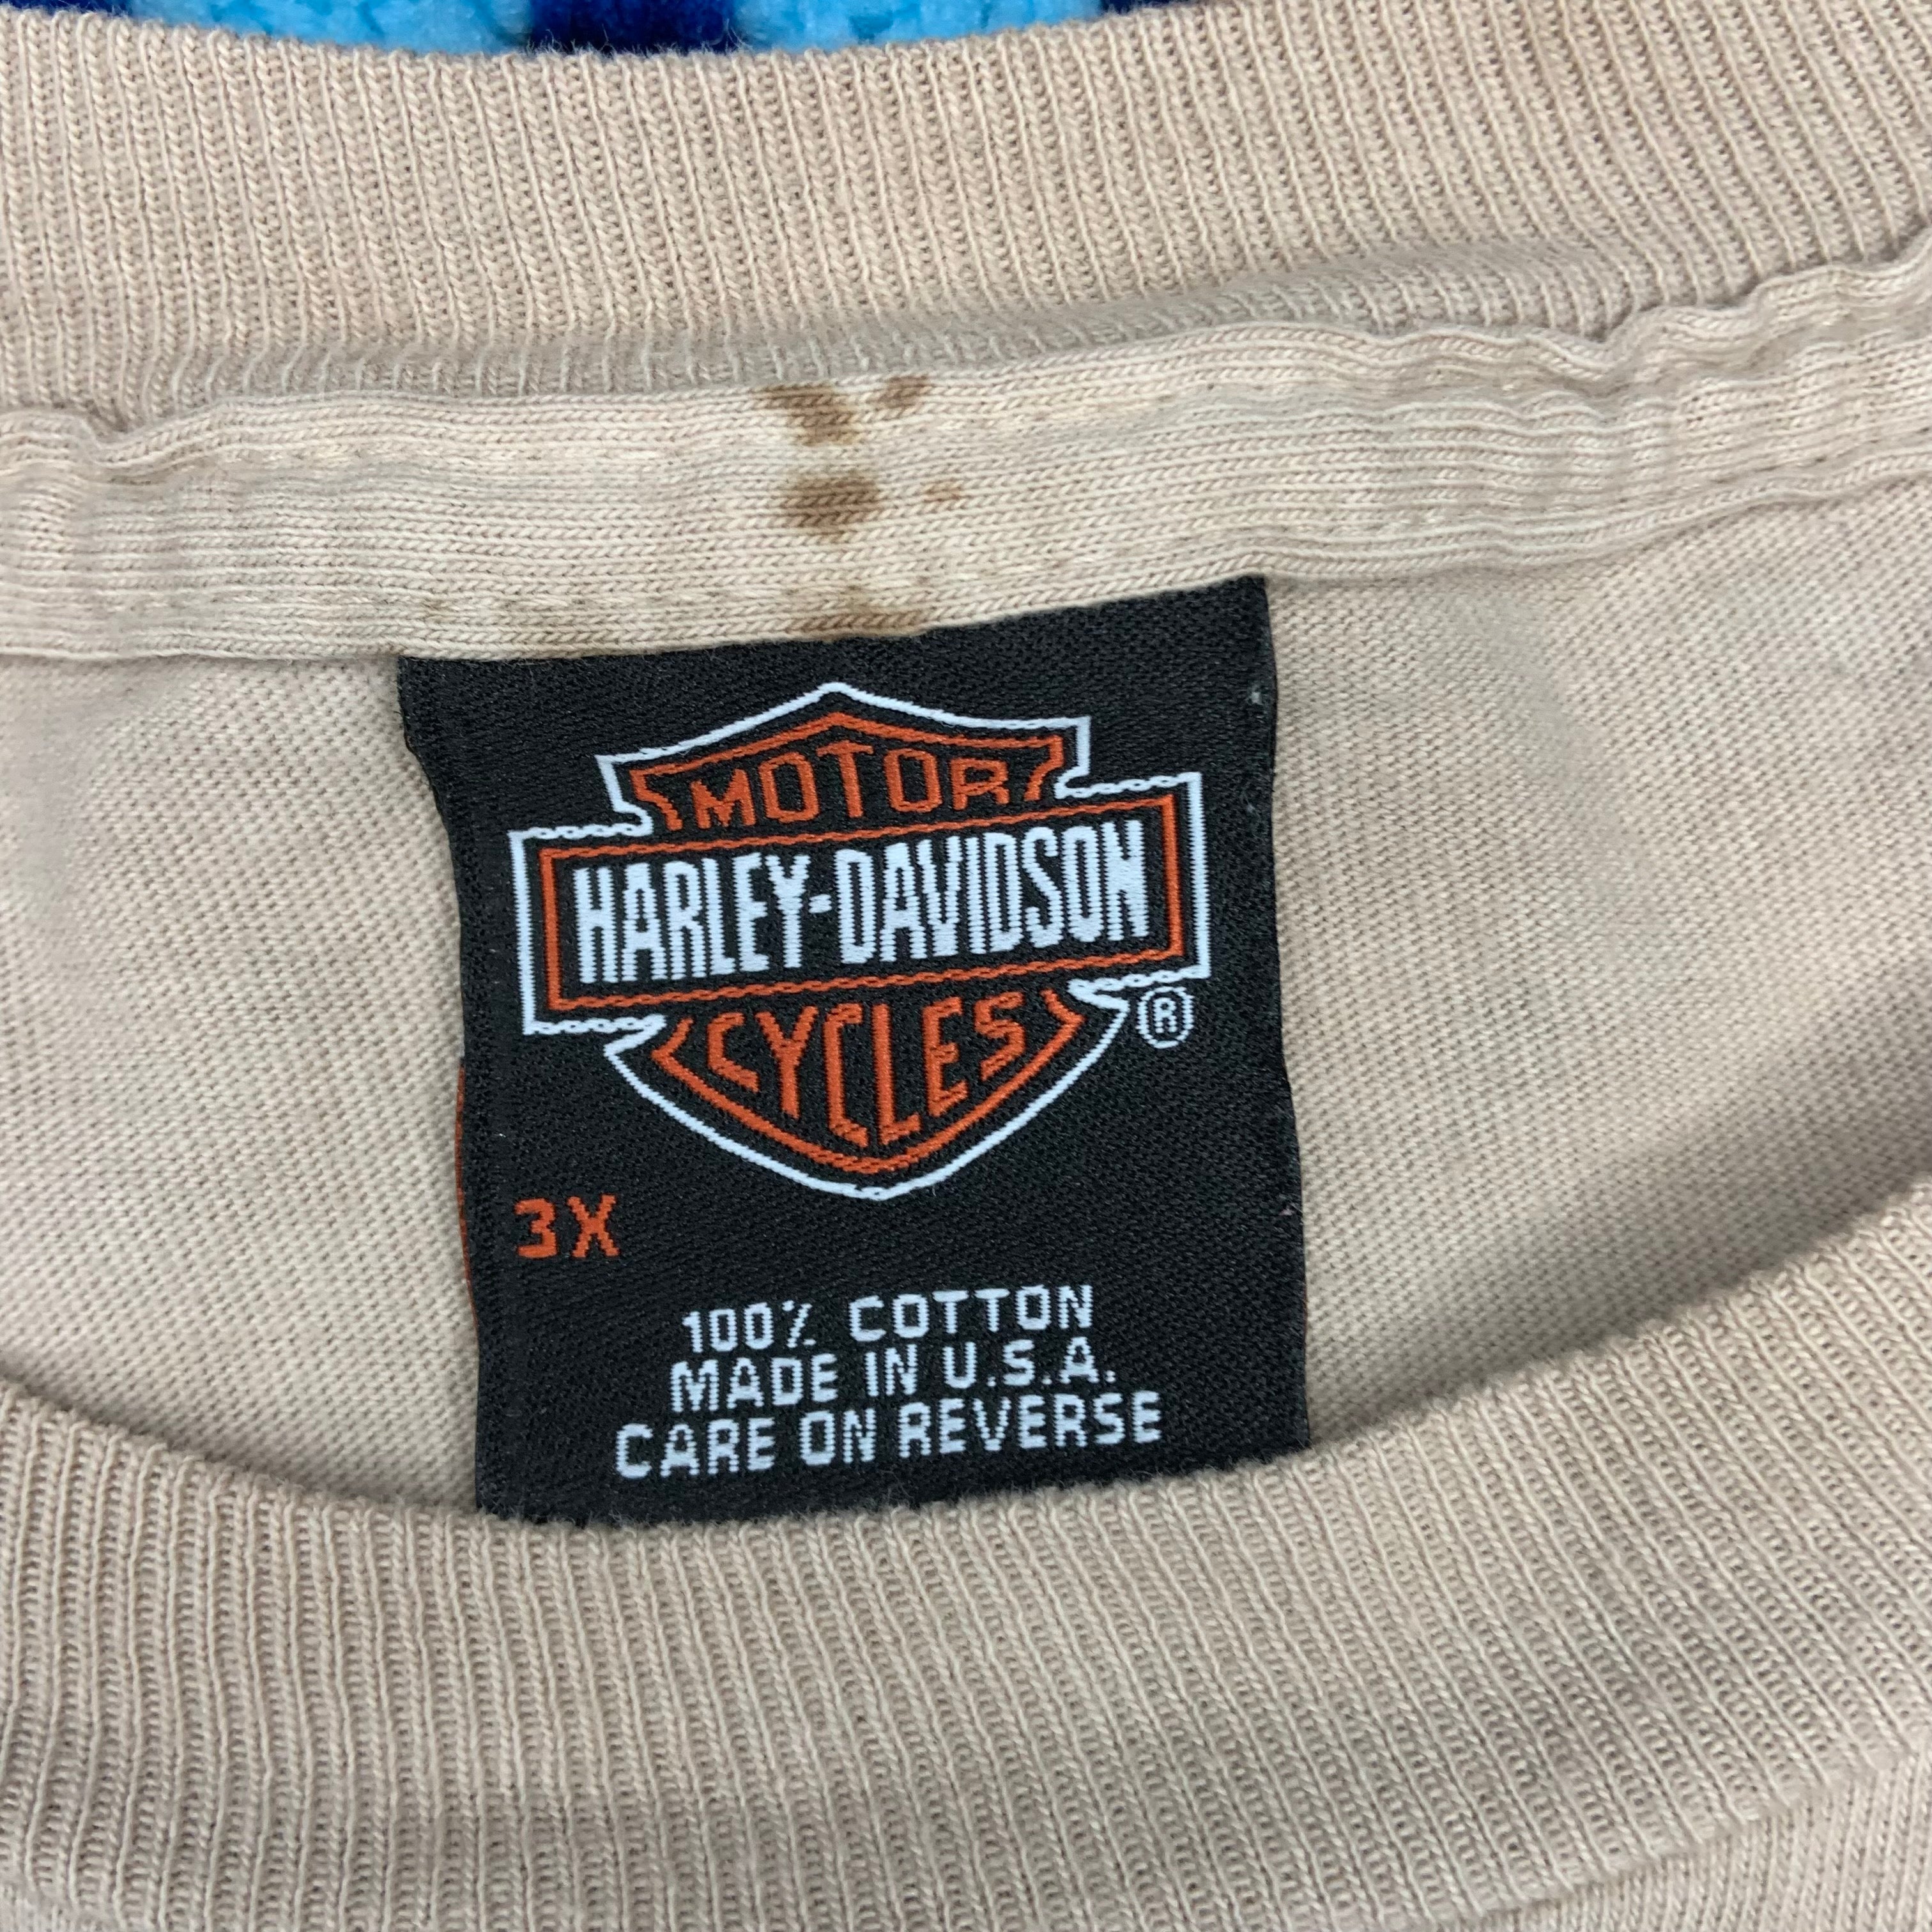 T-Shirt Harley Davidson